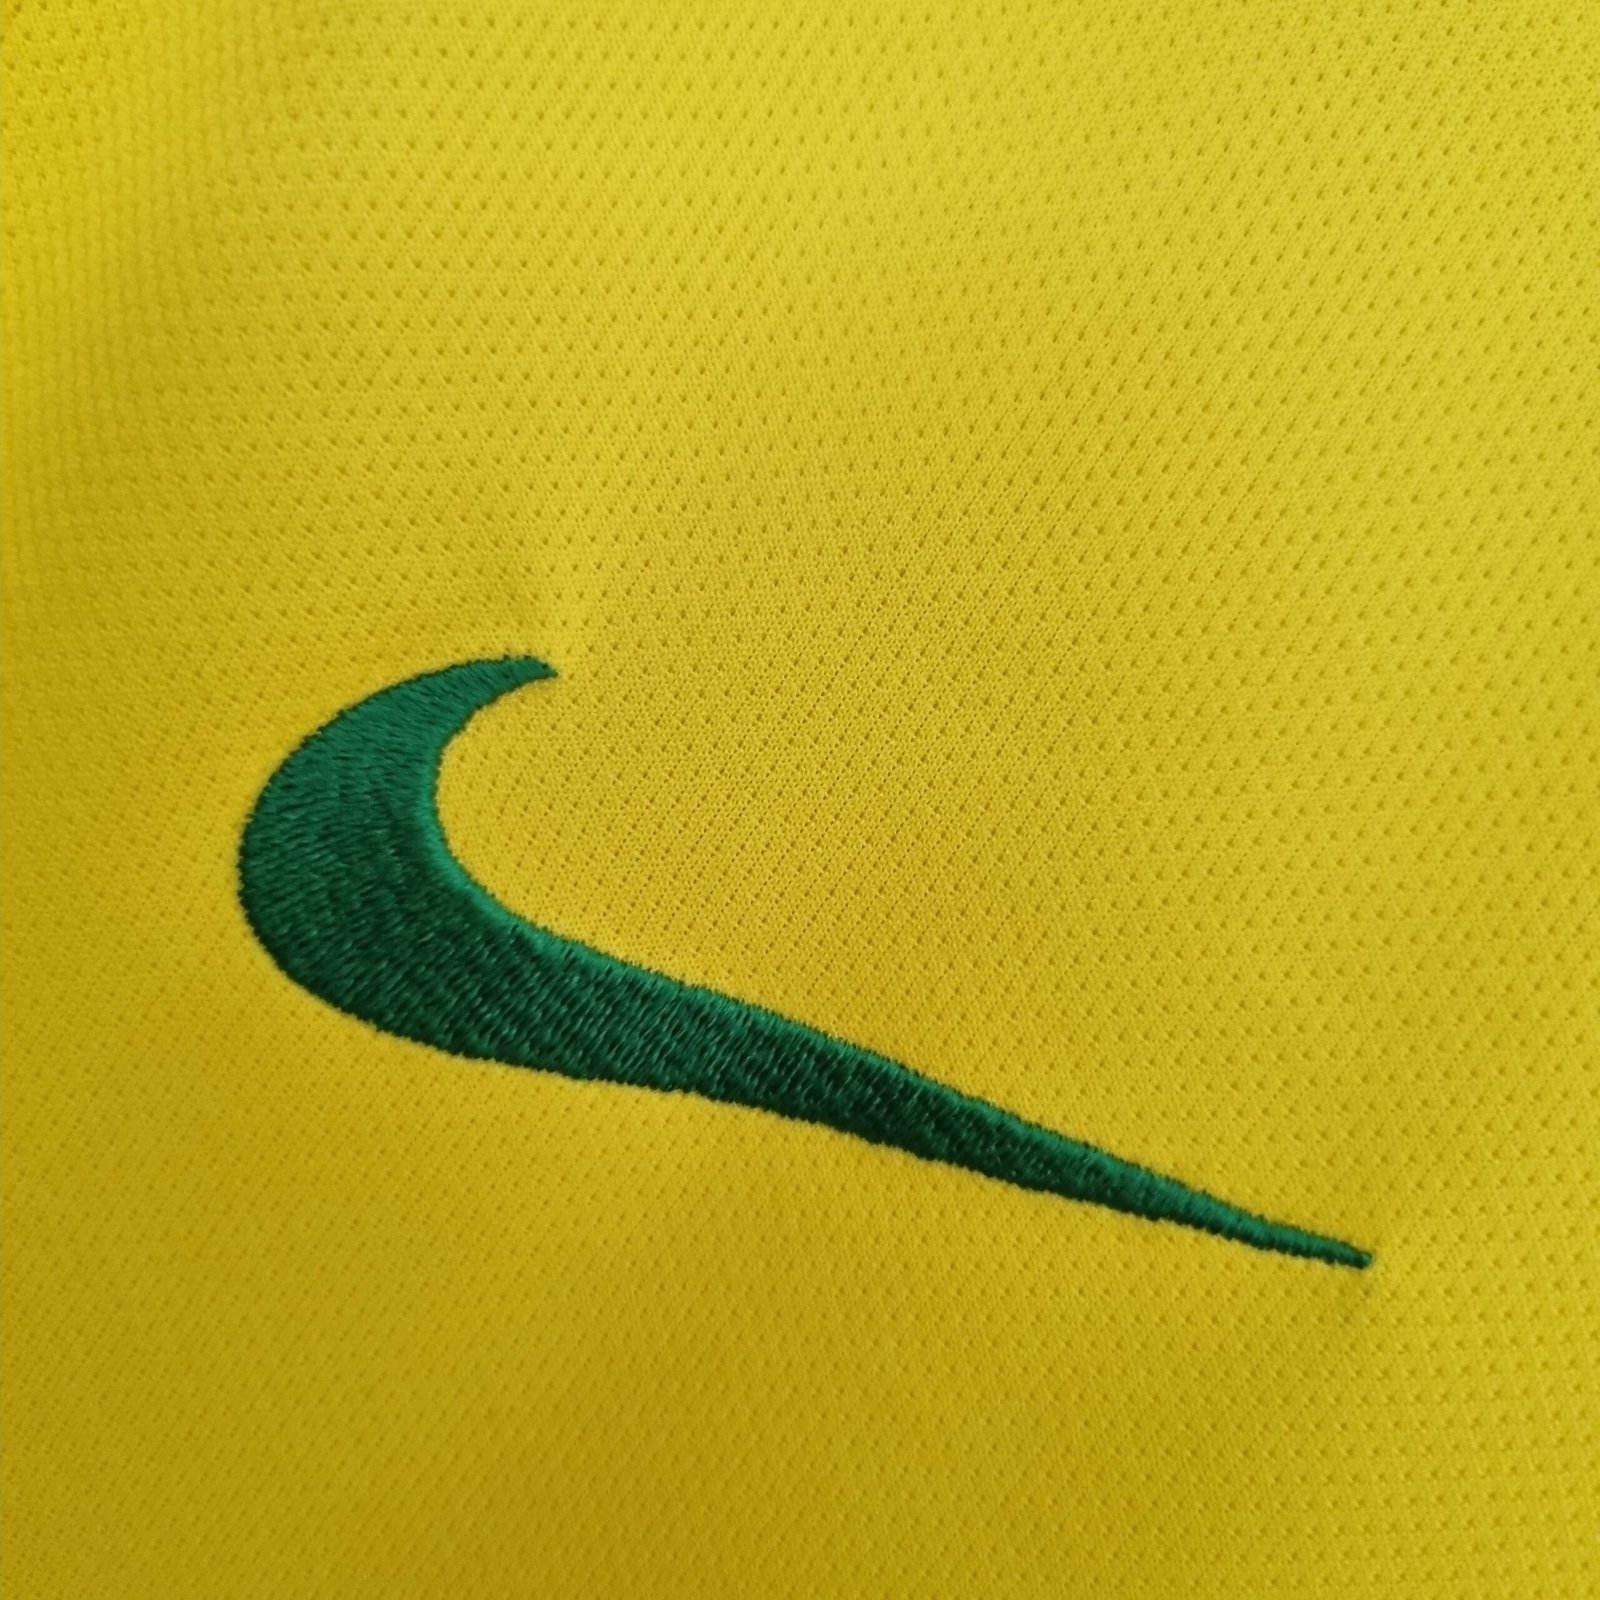 Camisa Seleção Brasileira Amarelo Home 2018 – Versão Torcedor – KS